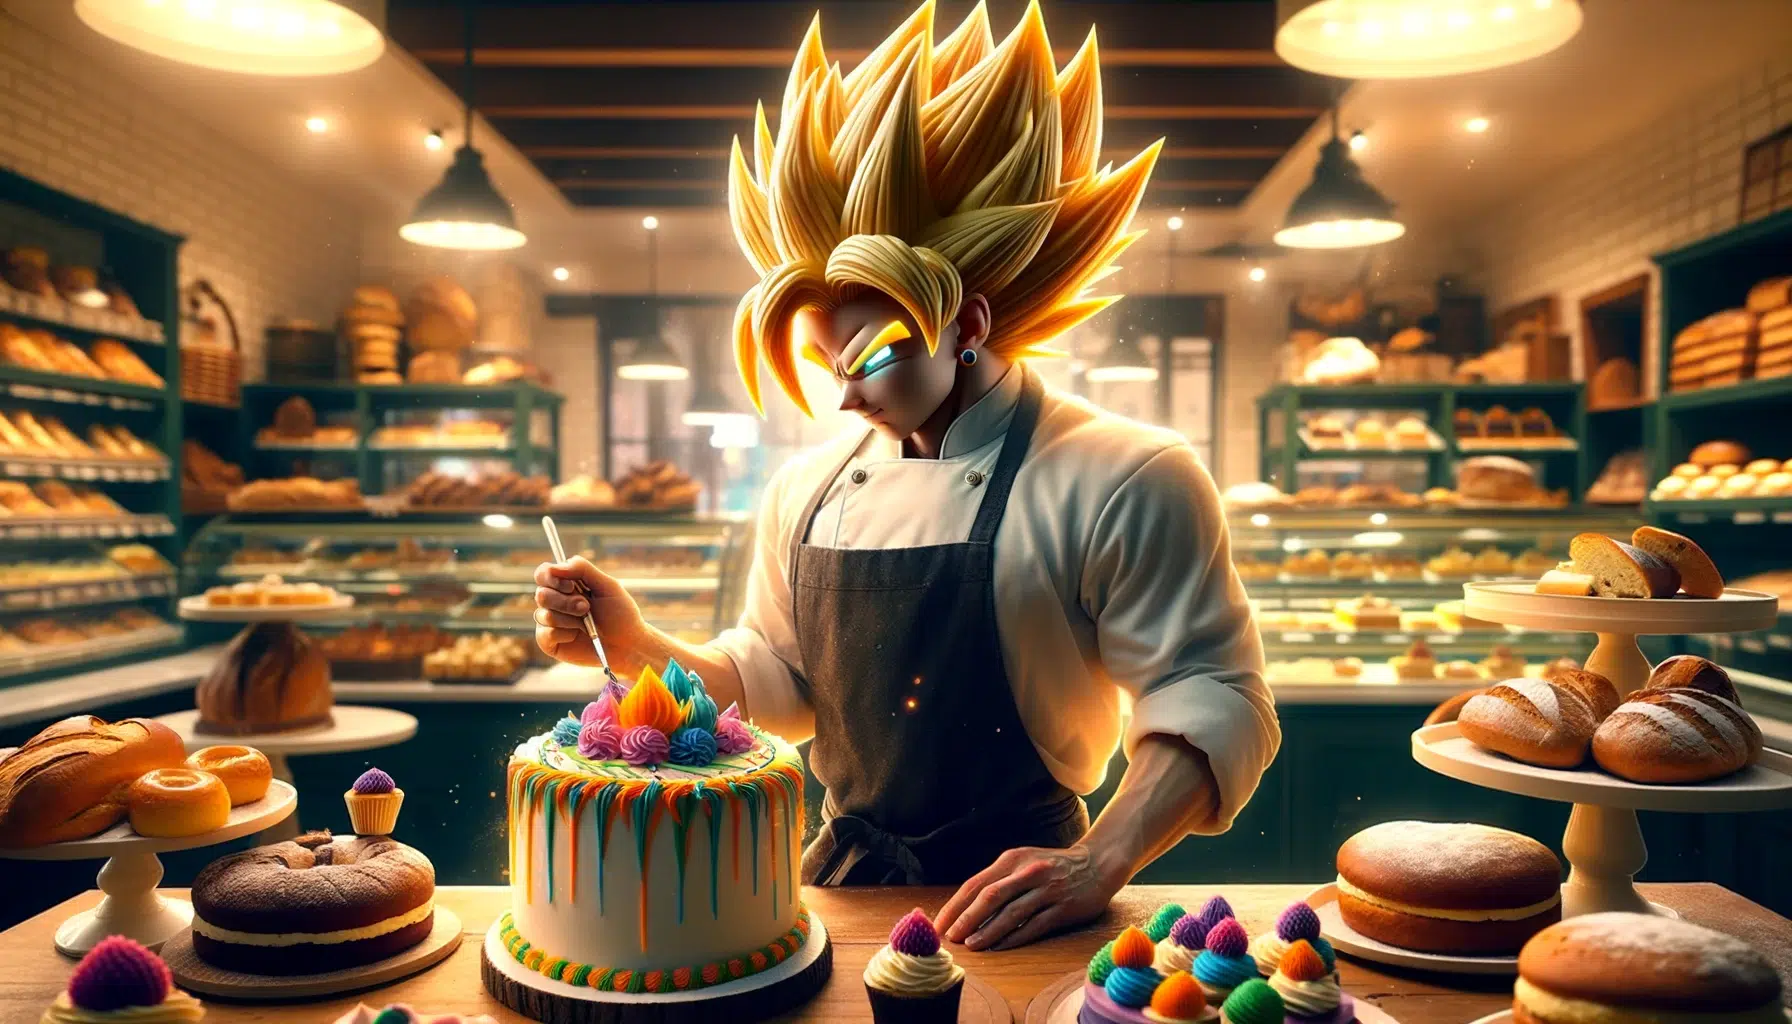 Goku de akira Toriyama en una pasteleria startup